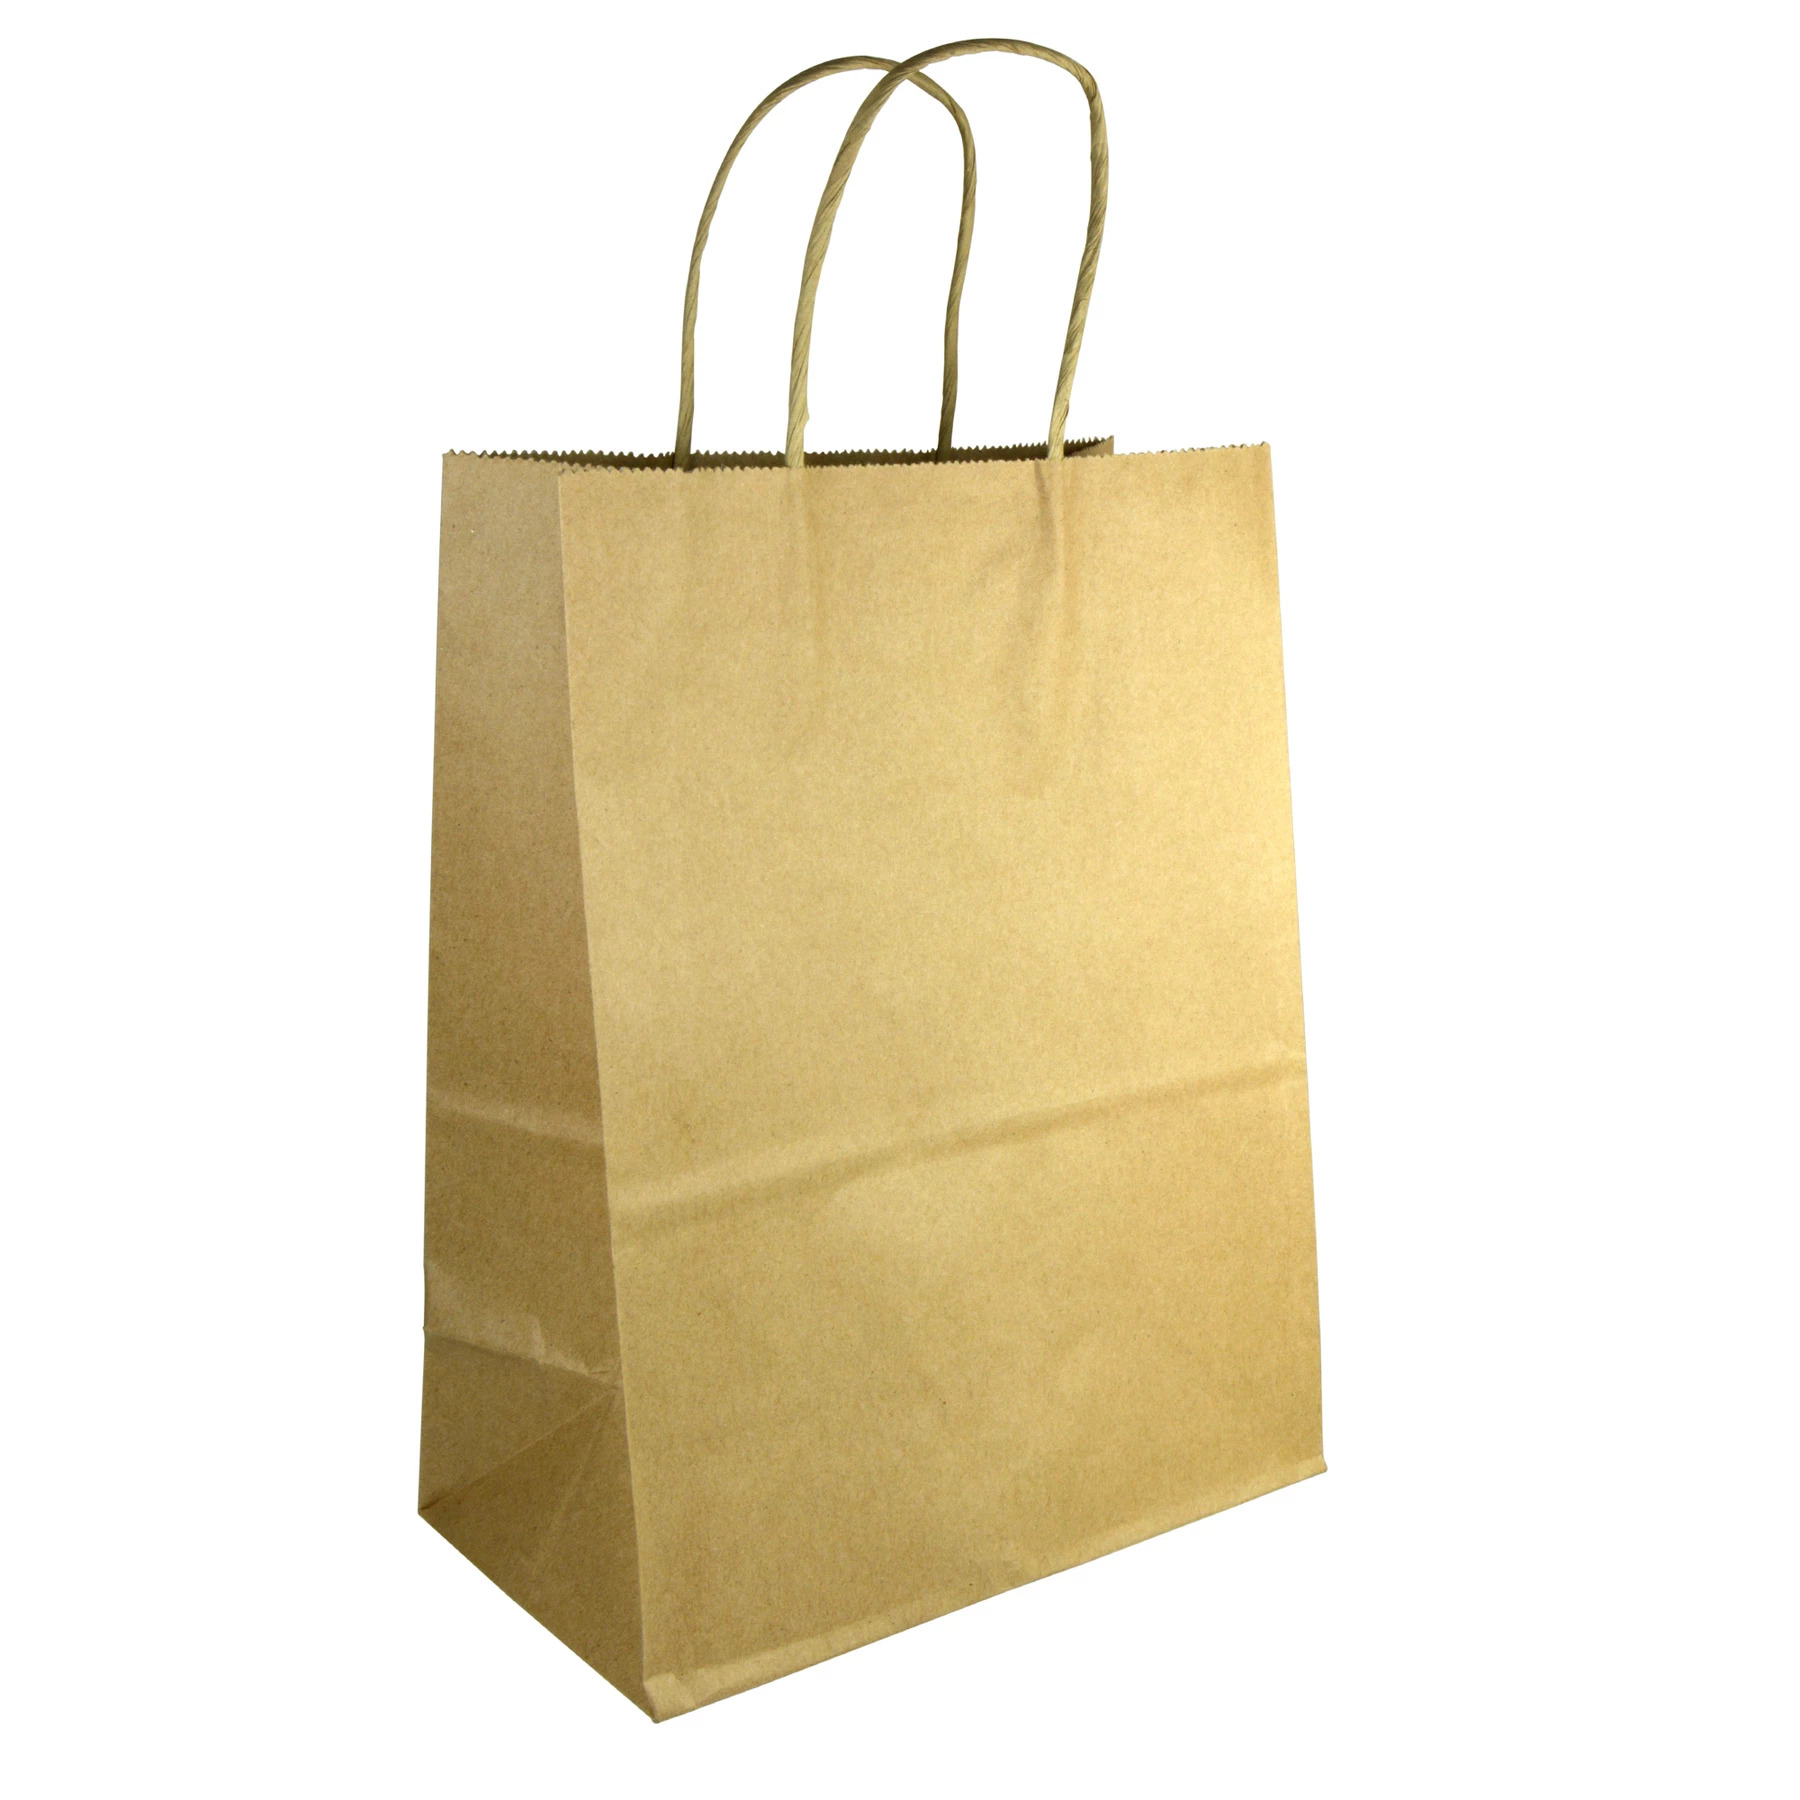 Dropship Brown Kraft Paper Bags 8 X 4.75 X 10.5 In Bulk. Pack Of 50 Small